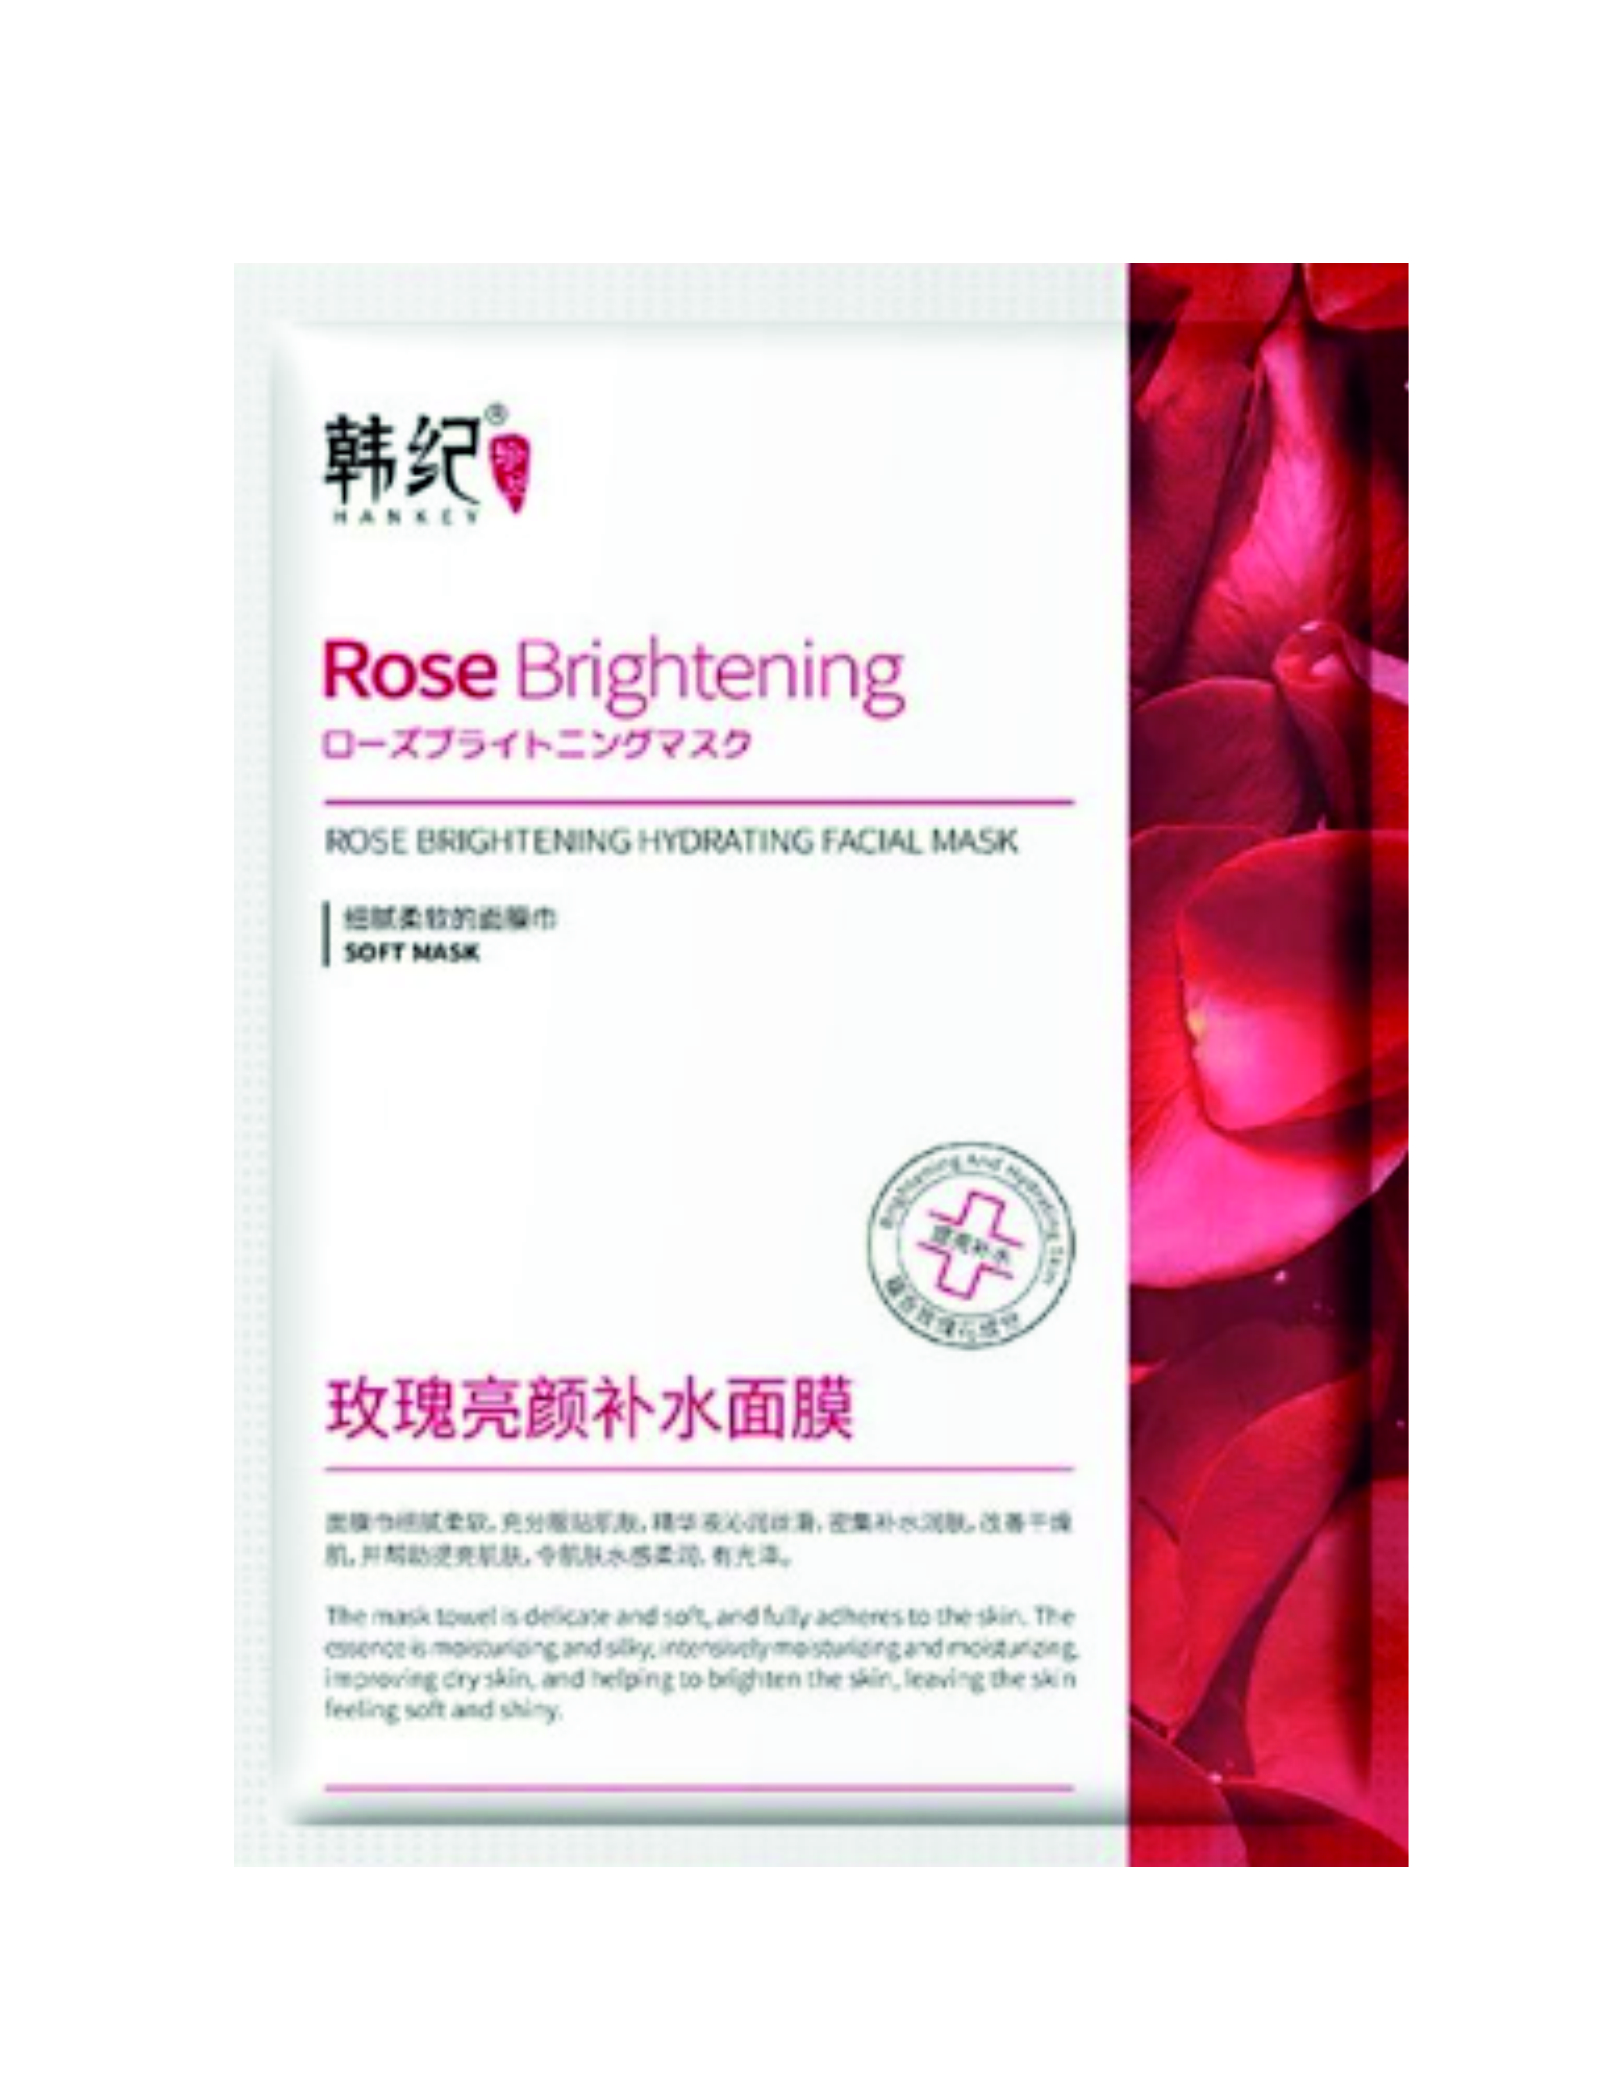 Hankey rose brightening hydrating facial mask Увлажняющая тканевая маска с экстрактом розы, 25мл